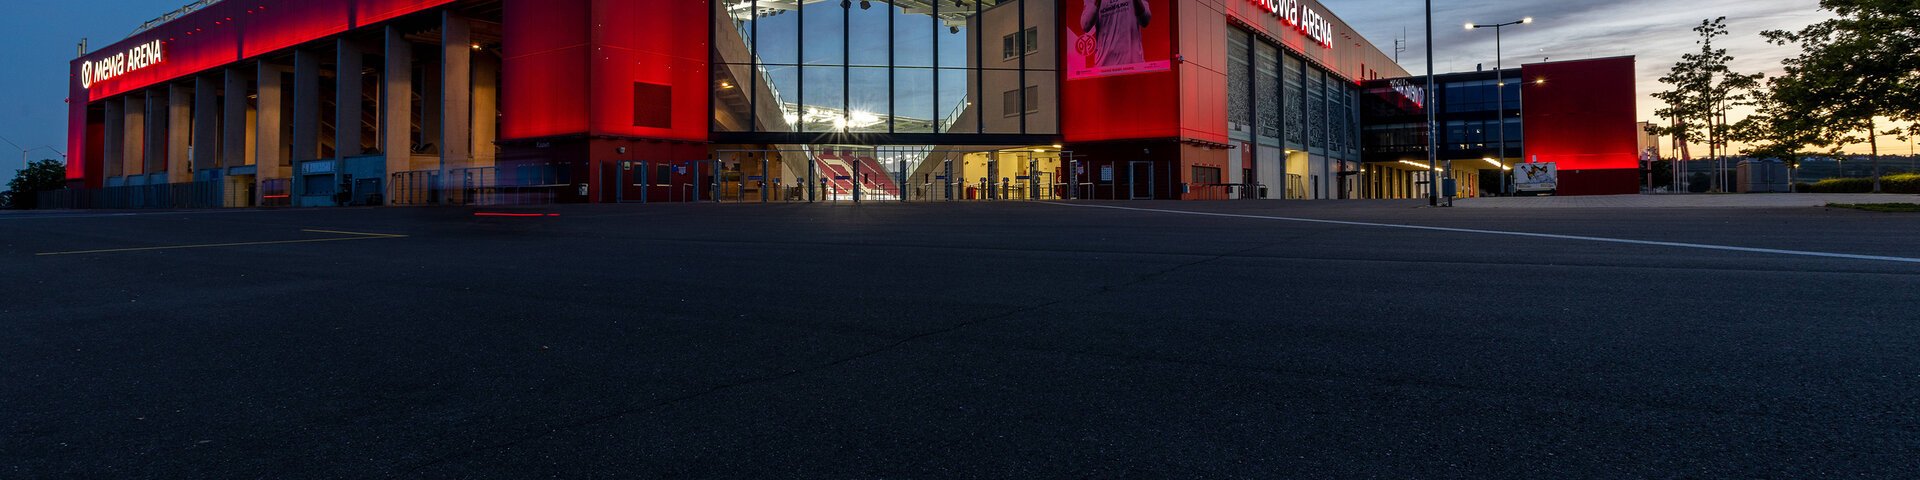 MEWA Arena Außenansicht Haupteingang